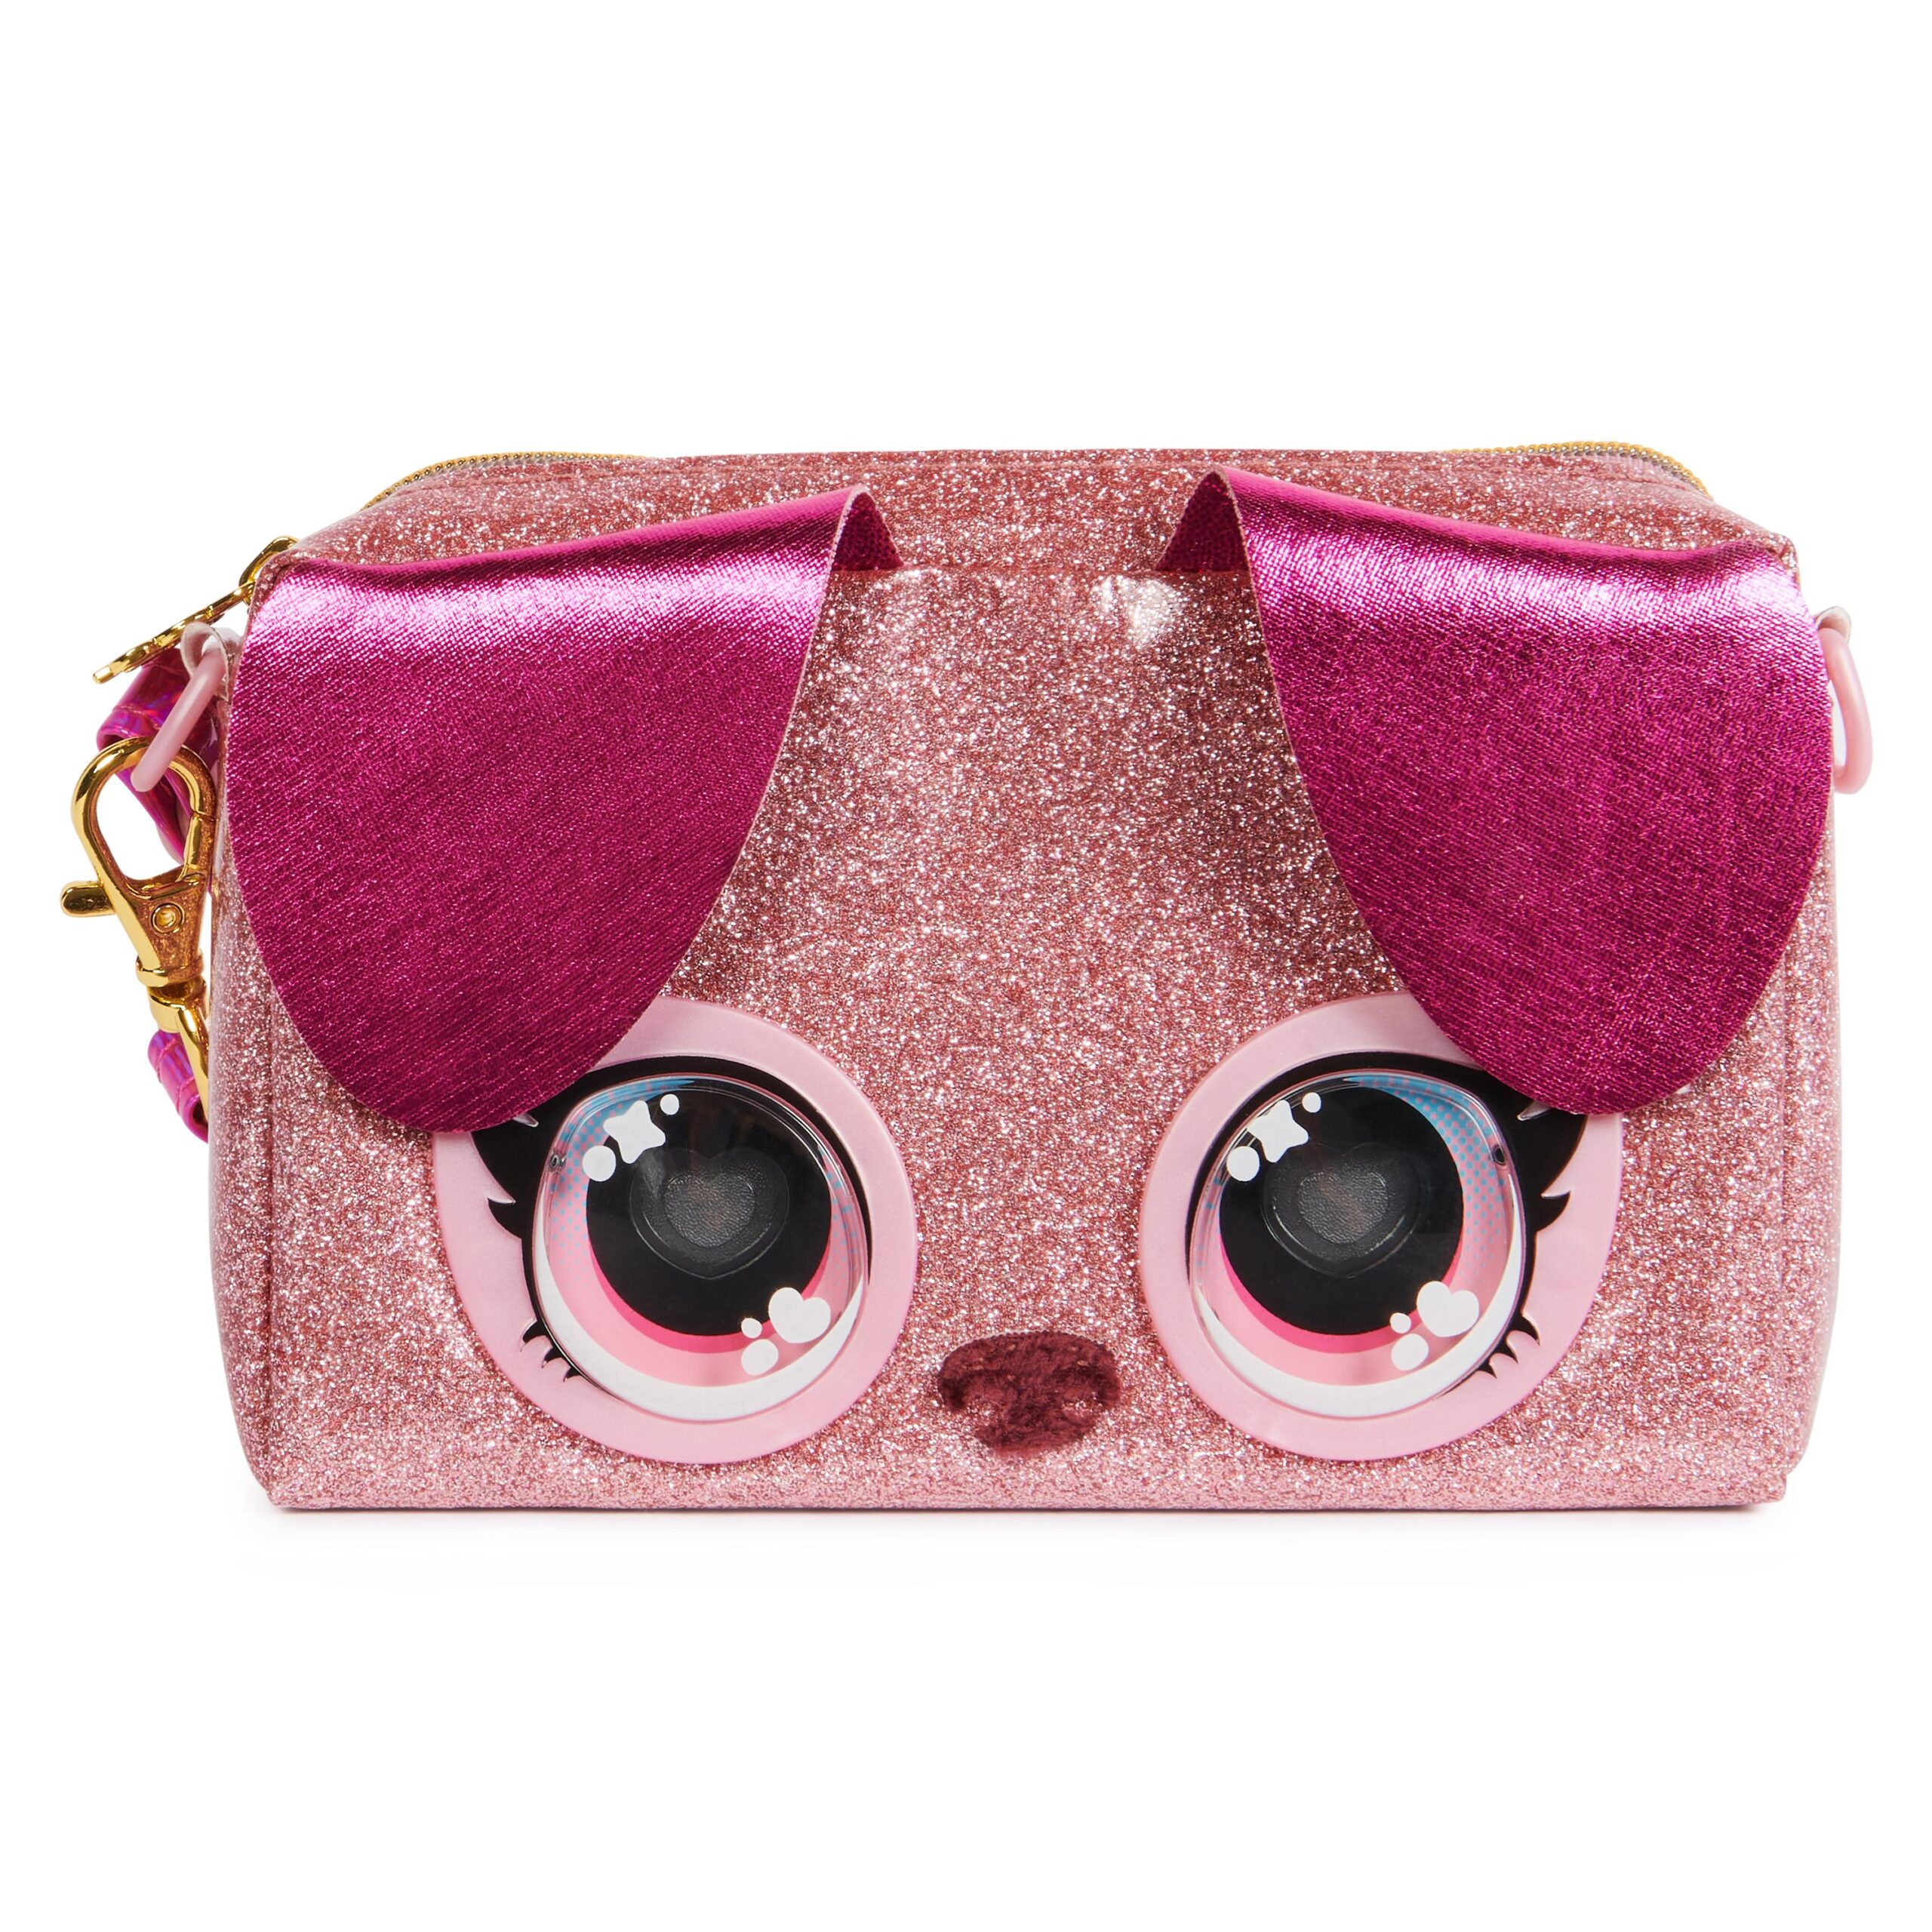 Purse pets, mini borsetta rosa con occhi arcobaleno che si illuminano, giocattoli per bambine dai 4 anni in su - PURSE PETS